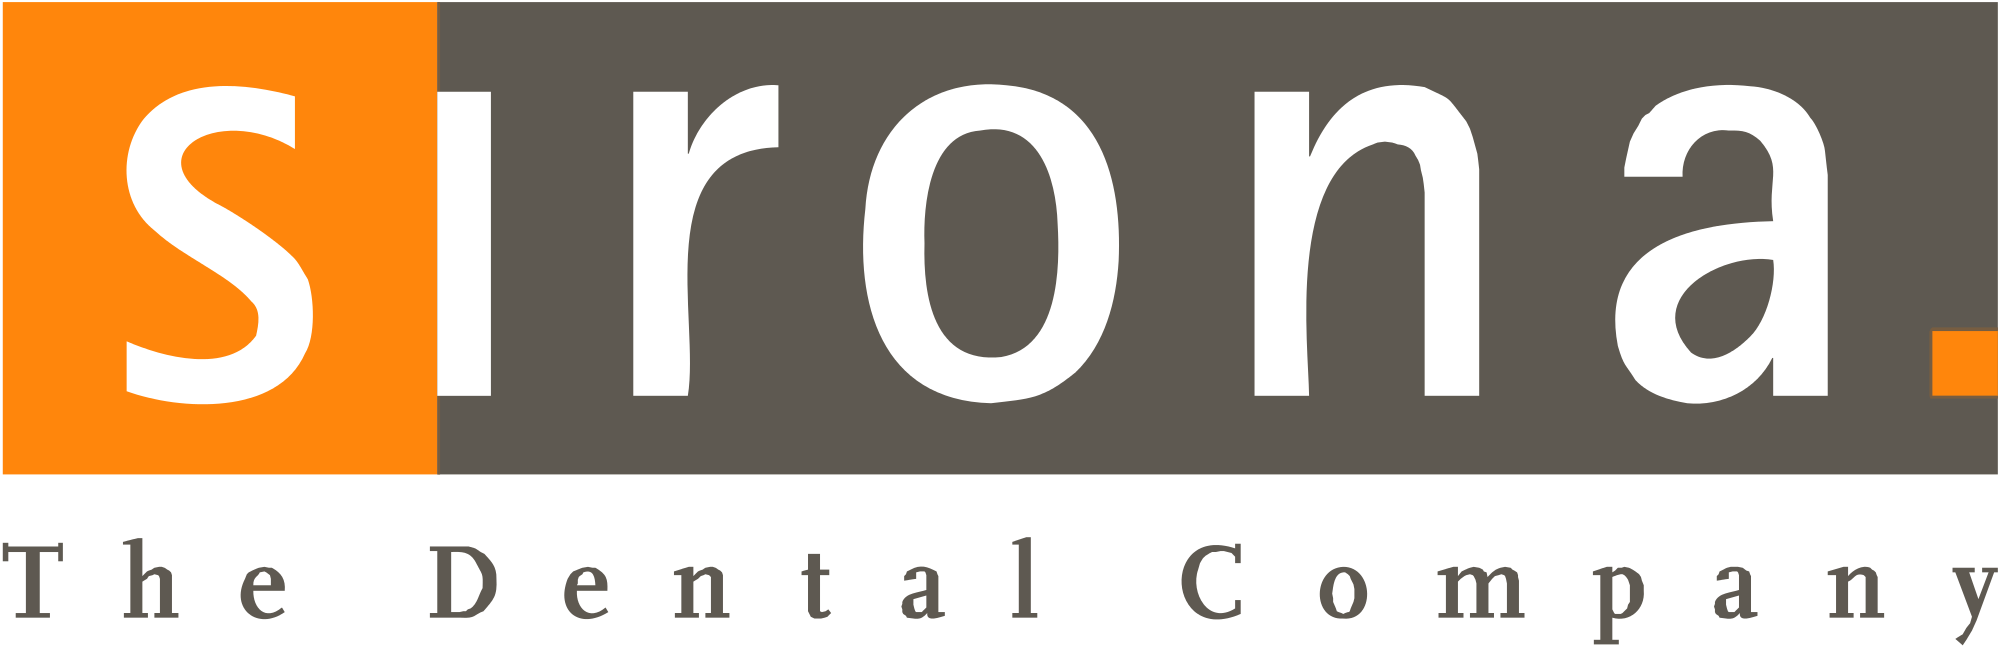 Sirona The dental company logo